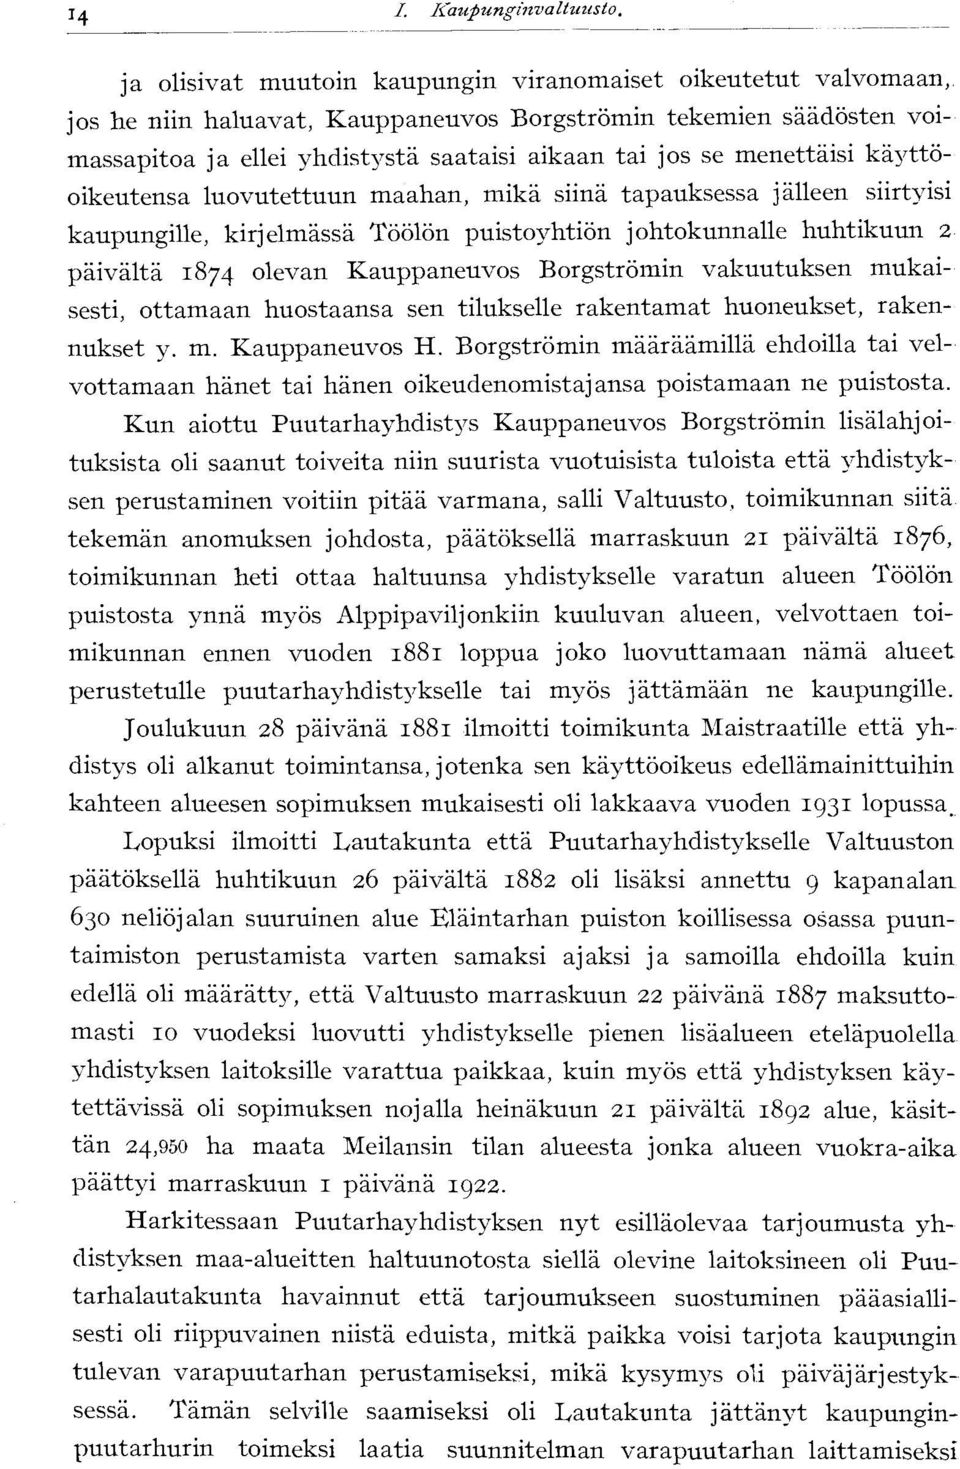 menettäisi käyttöoikeutensa luovutettuun maahan, mikä siinä tapauksessa jälleen siirtyisi kaupungille, kirjelmässä Töölön puistoyhtiön johtokunnalle huhtikuun 2 päivältä 1874 olevan Kauppaneuvos